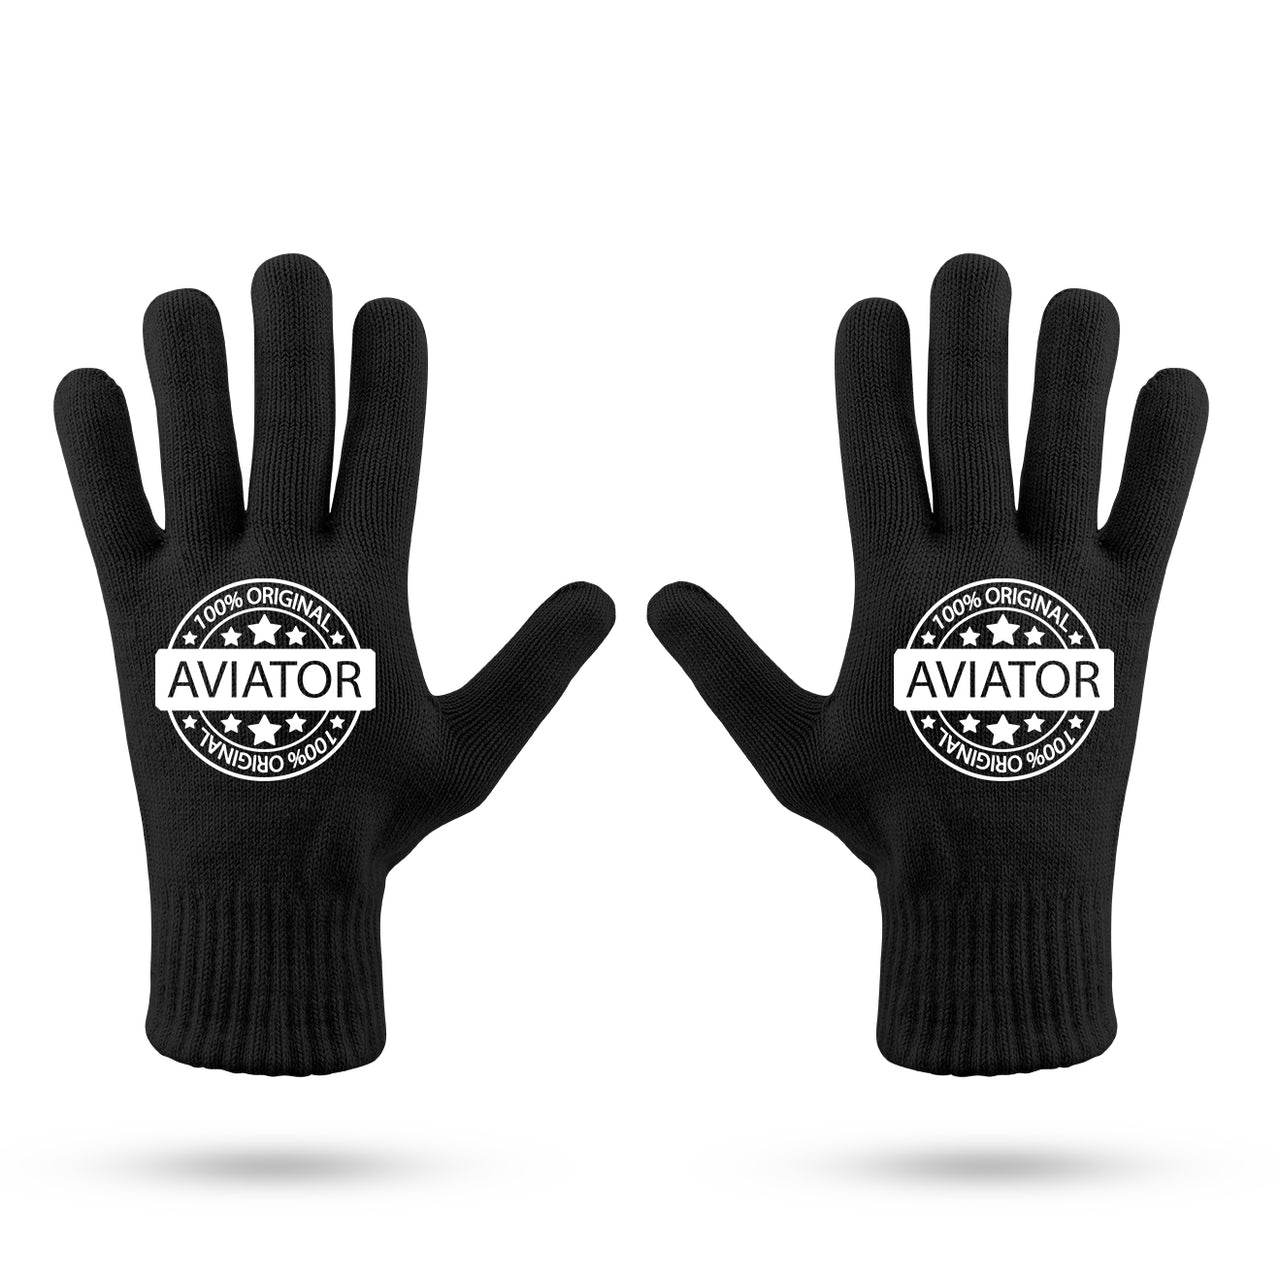 %100 Original Aviator Designed Gloves